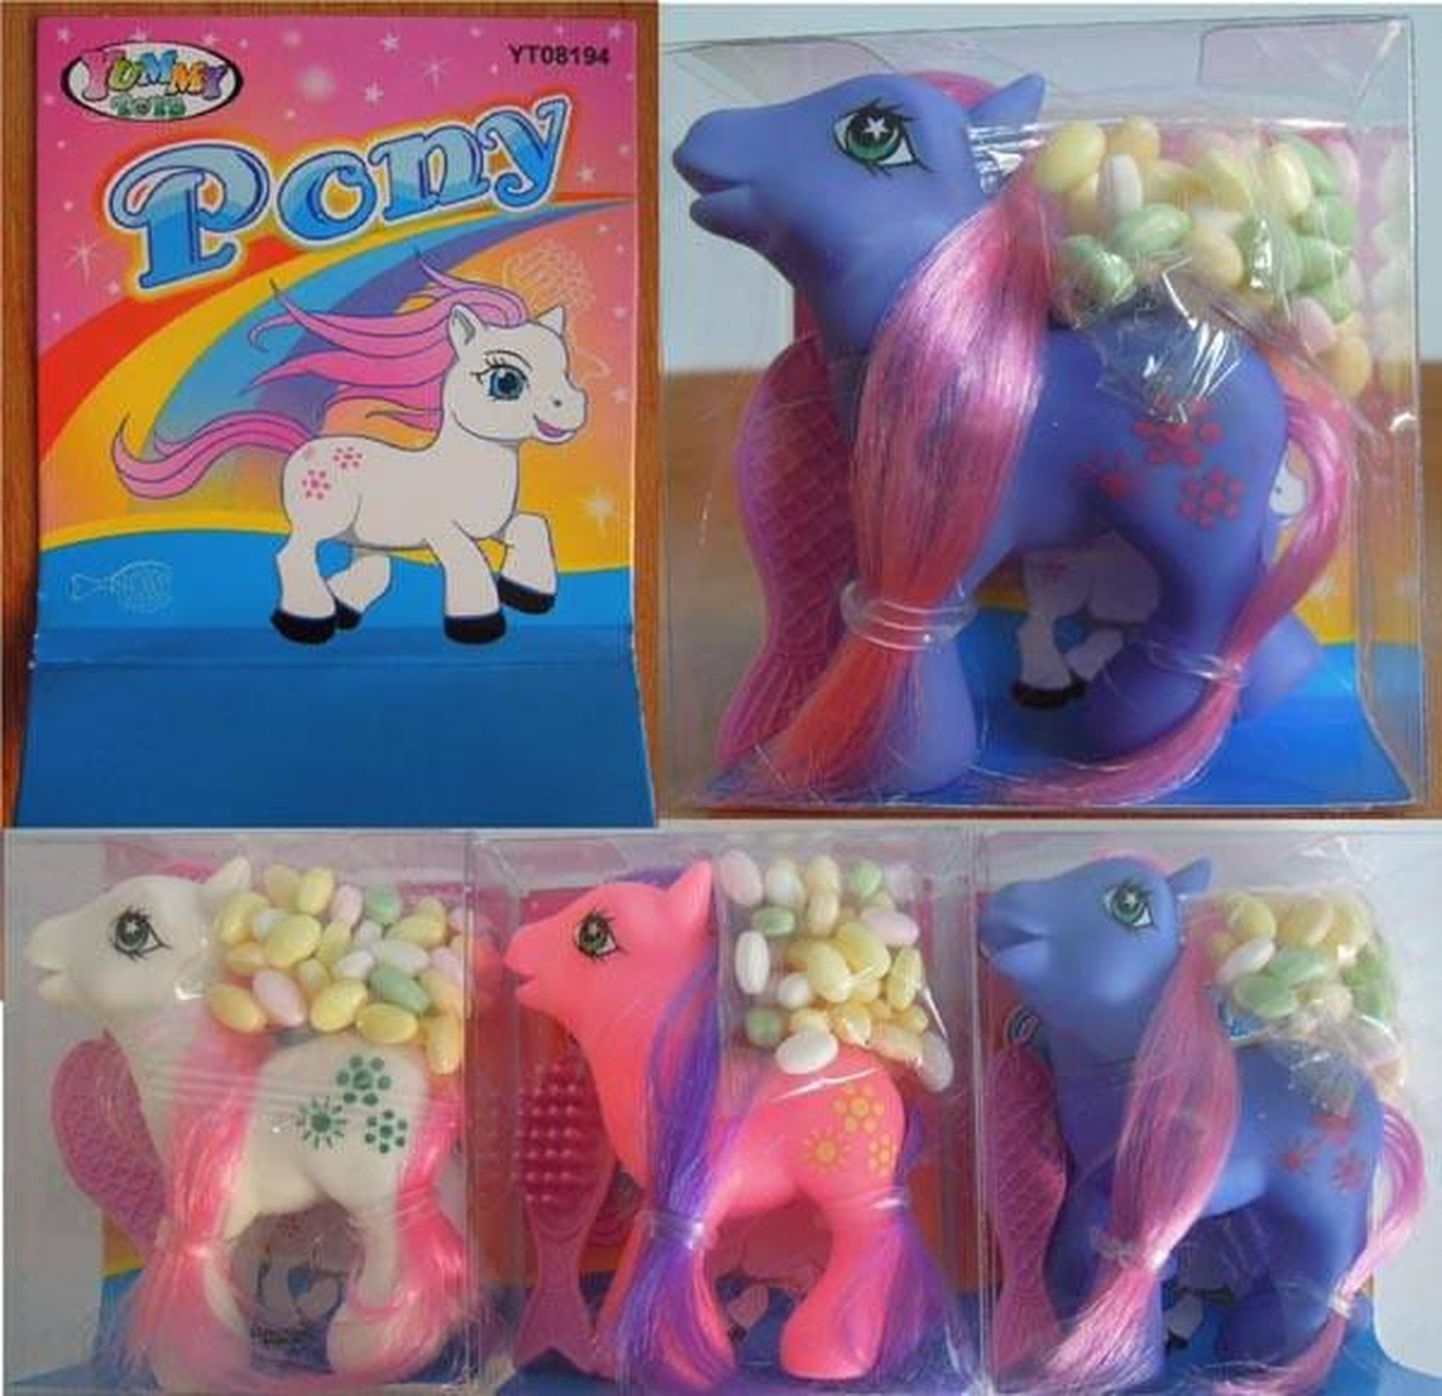 Игрушечный пони Yummi Toys Pony, продававшийся на бульваре Сыпрузе в киоске Siili фирмы Autogrill TÜ.